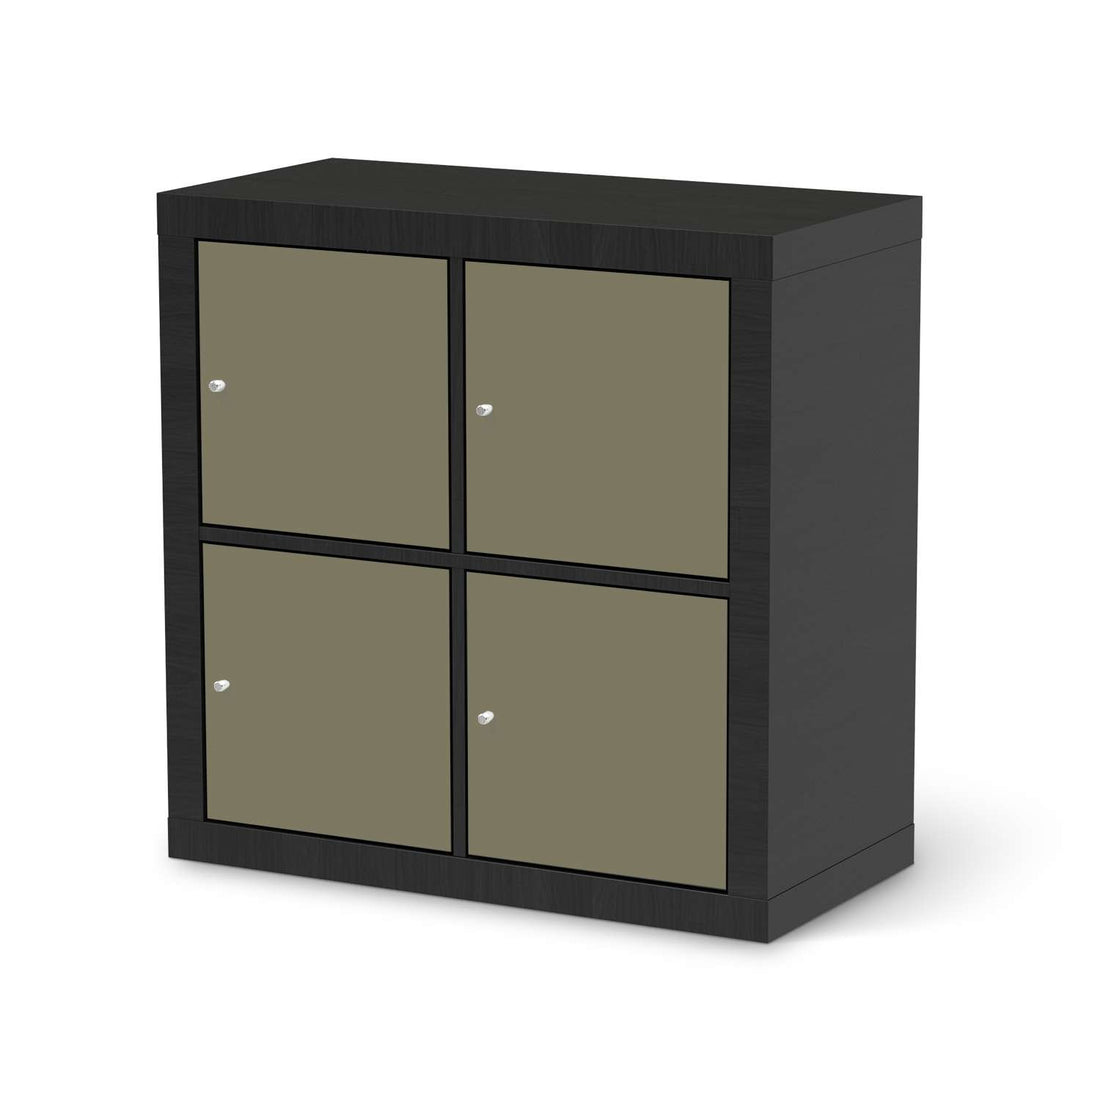 Klebefolie für Möbel Braungrau Light - IKEA Kallax Regal 4 Türen - schwarz